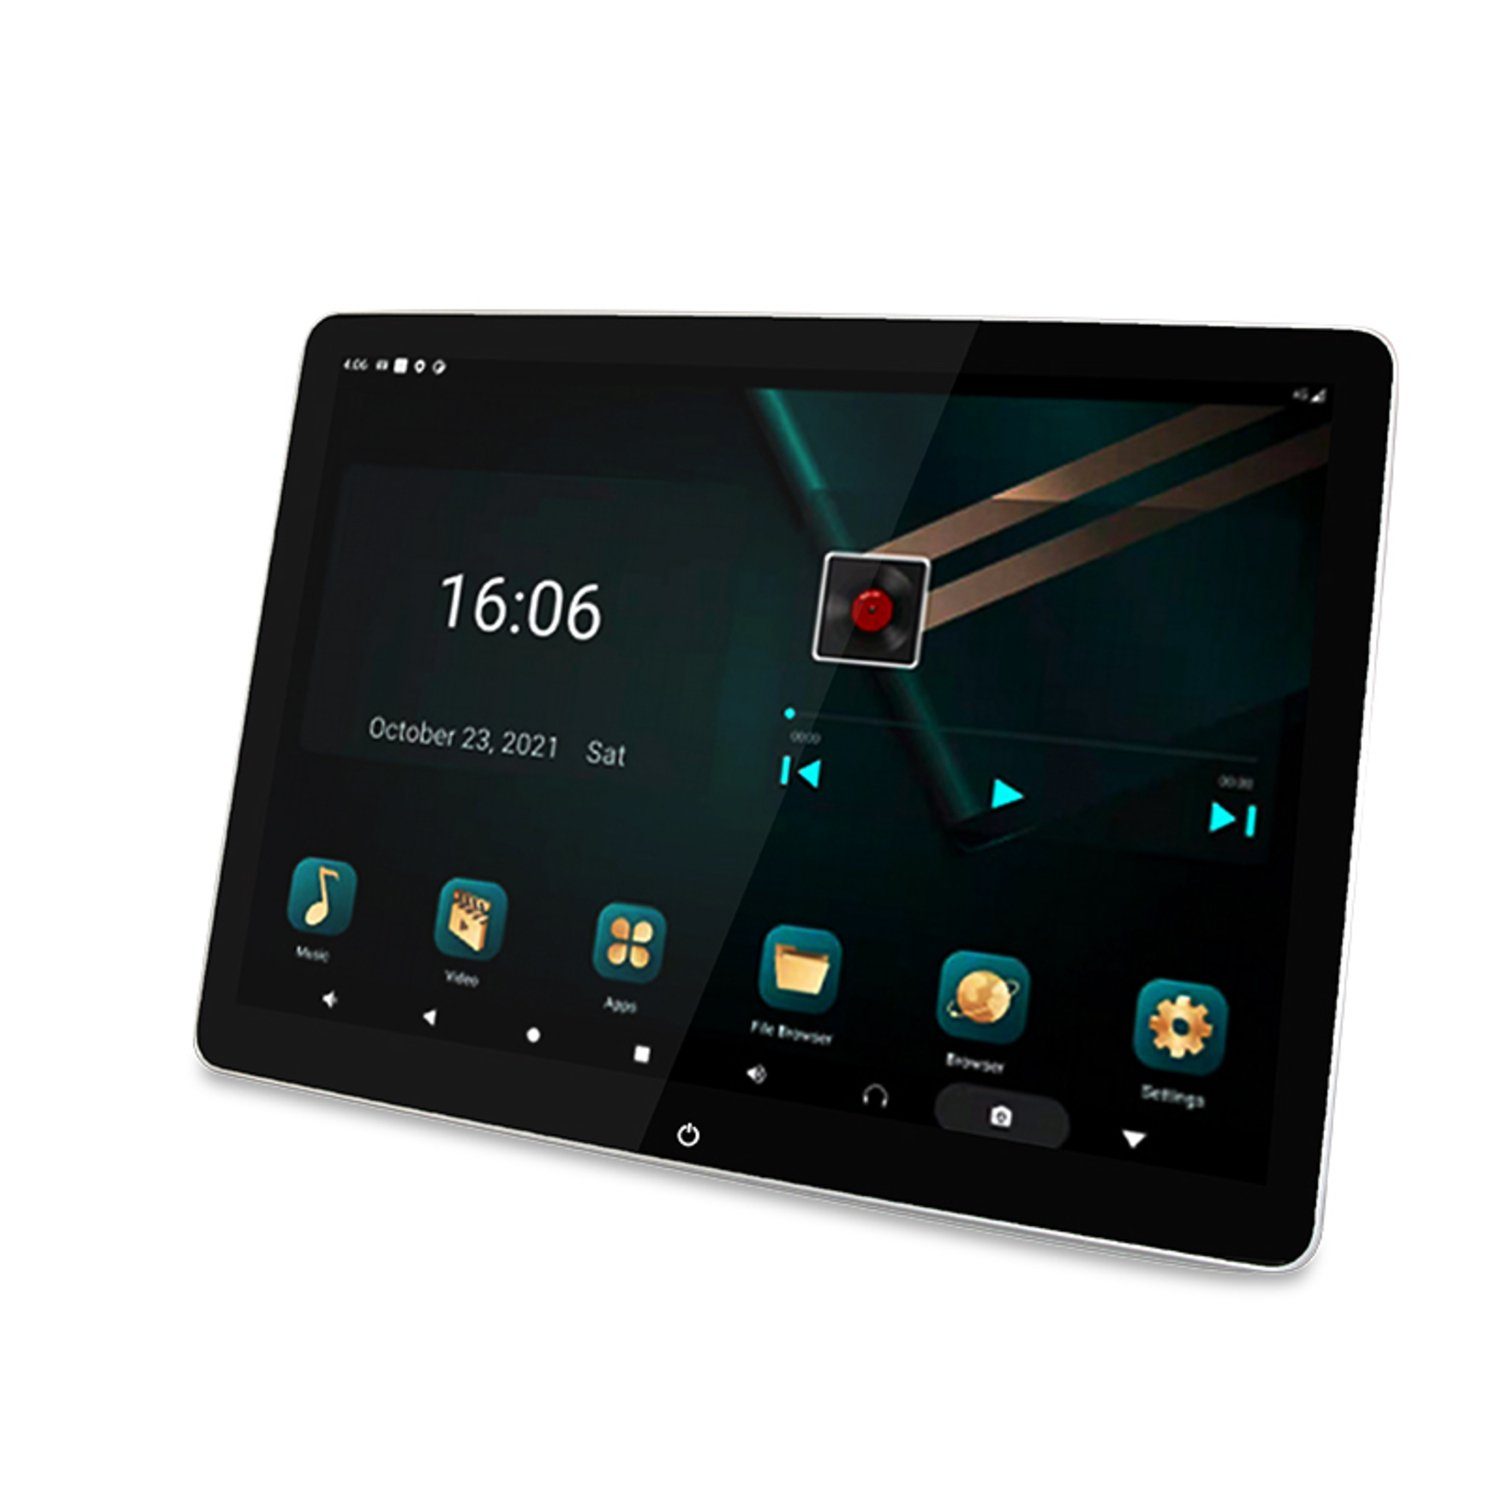 TAFFIO Univers. Auto Kopfstützen Android WiFi Bluetooth LTE Monitor 12"Touch Navigationsgerät